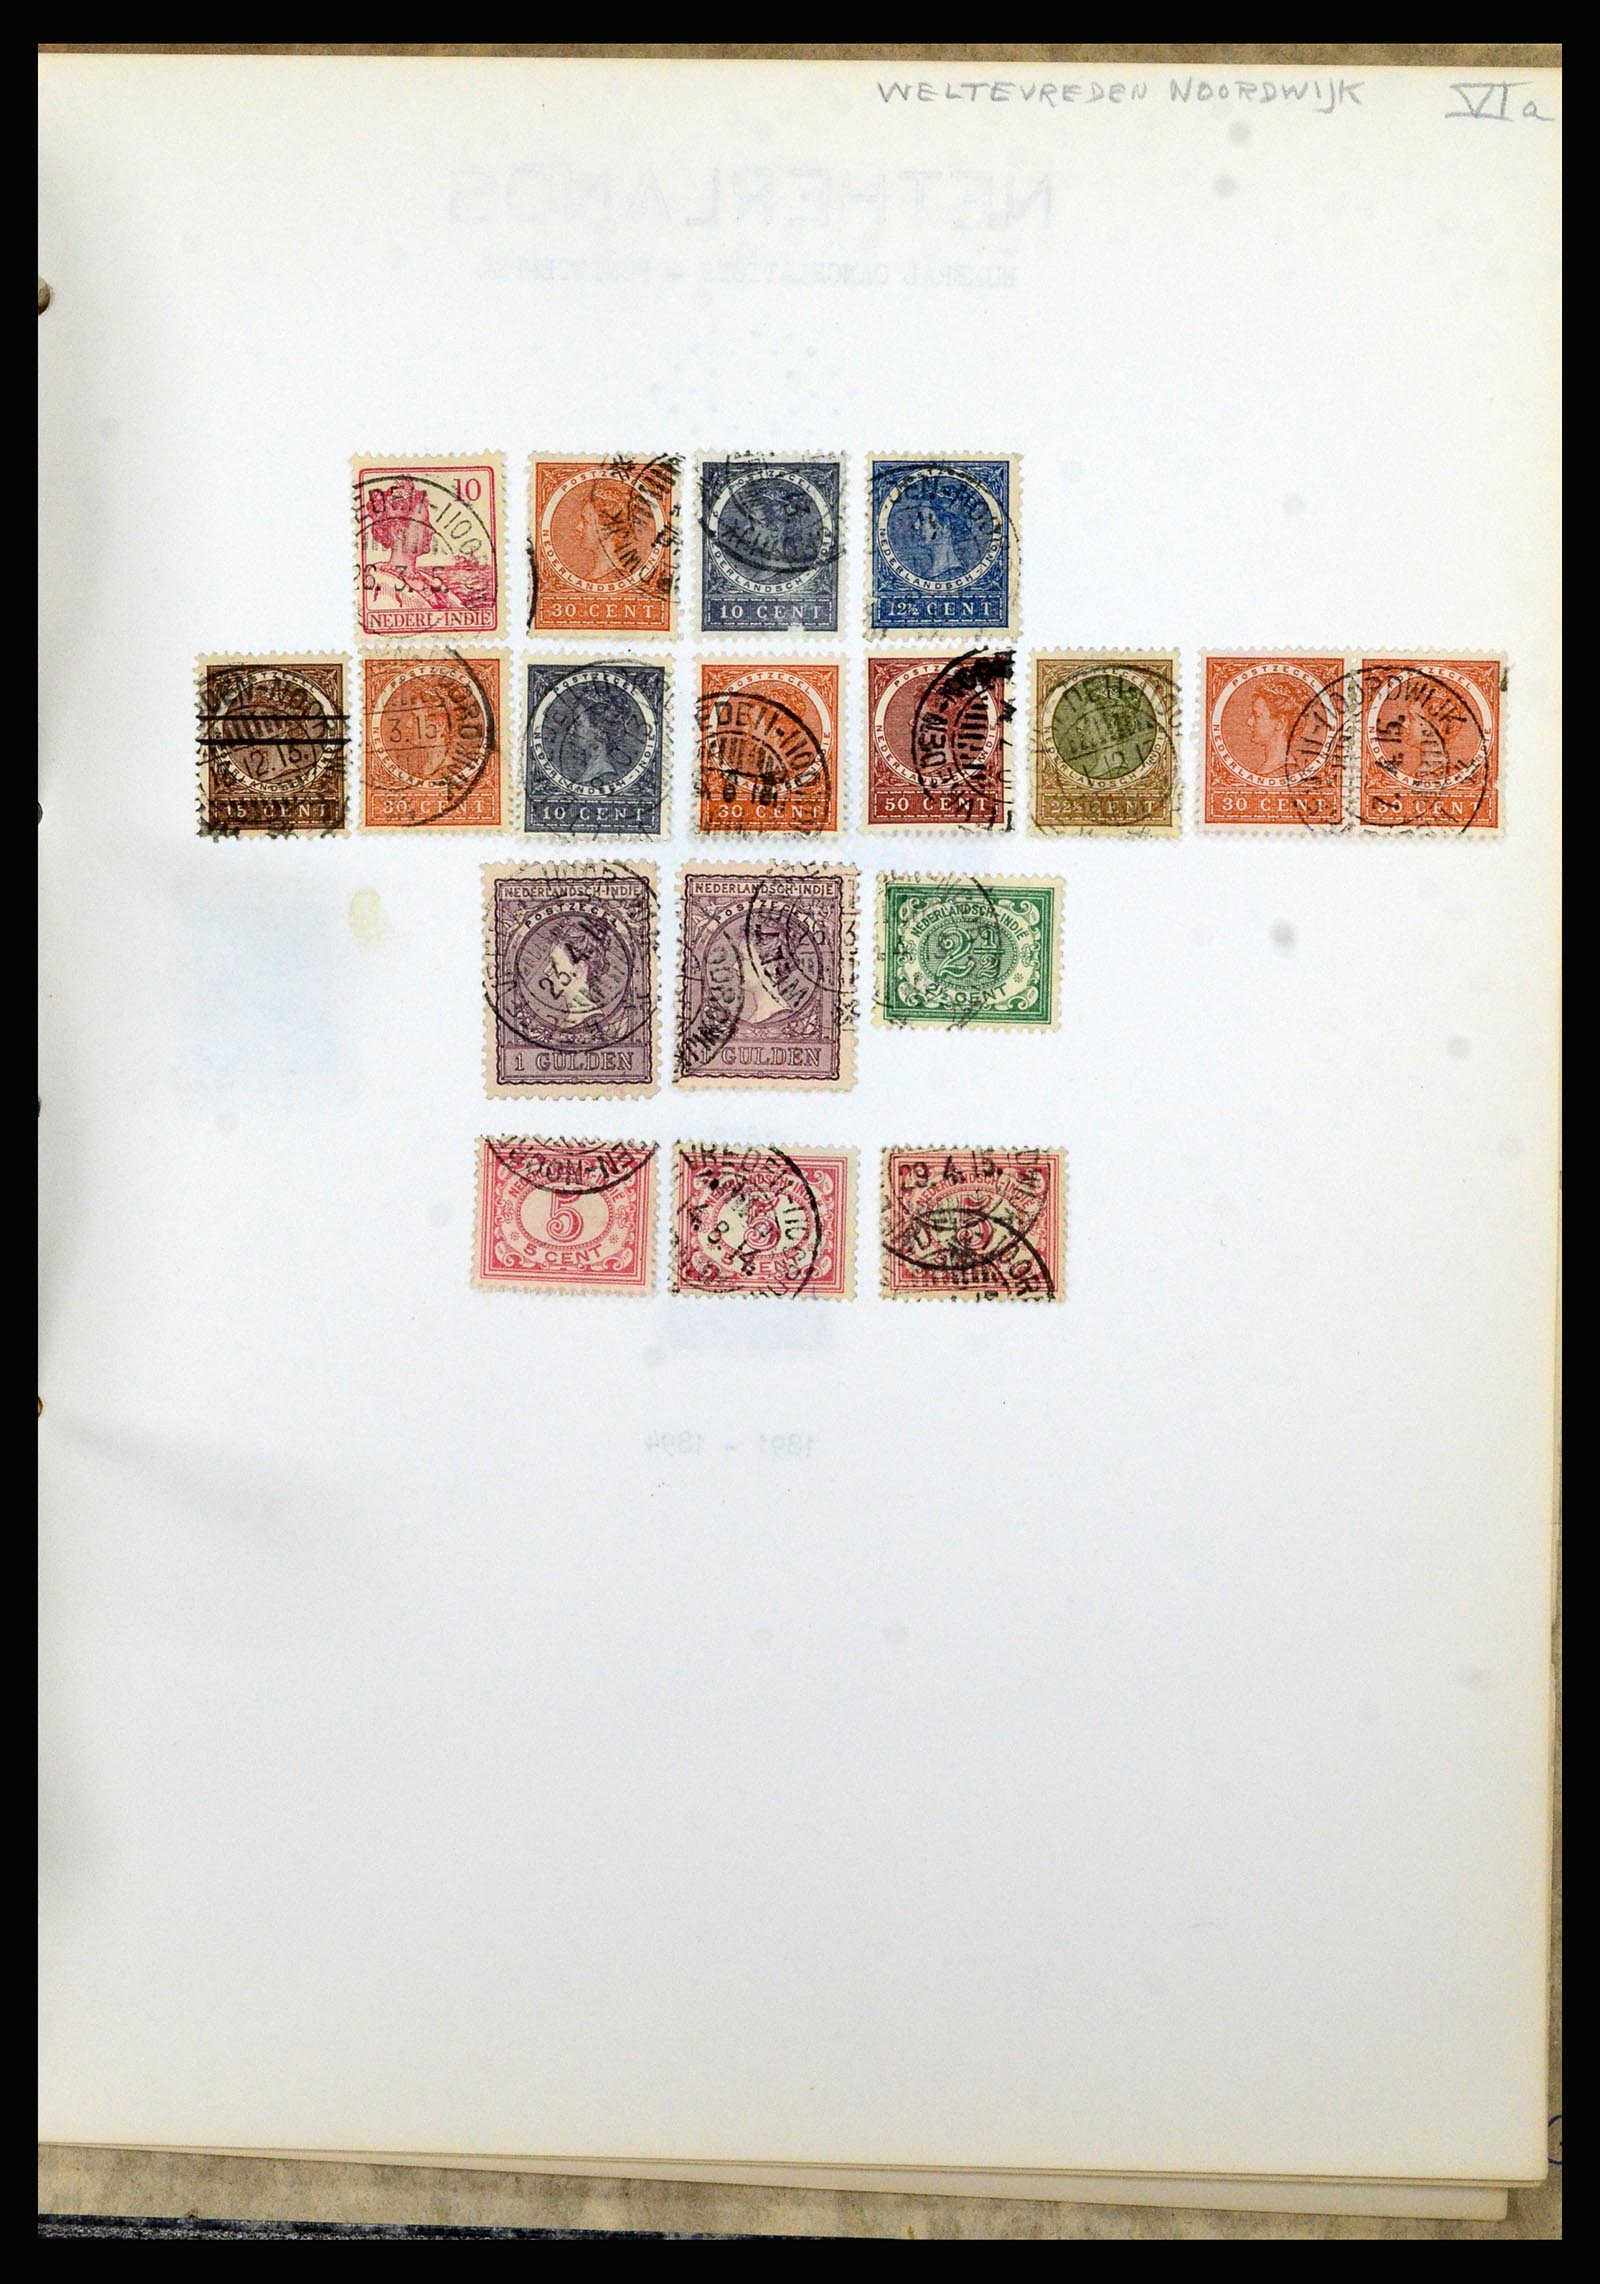 36841 192 - Postzegelverzameling 36841 Nederlands Indië kortebalk stempels.